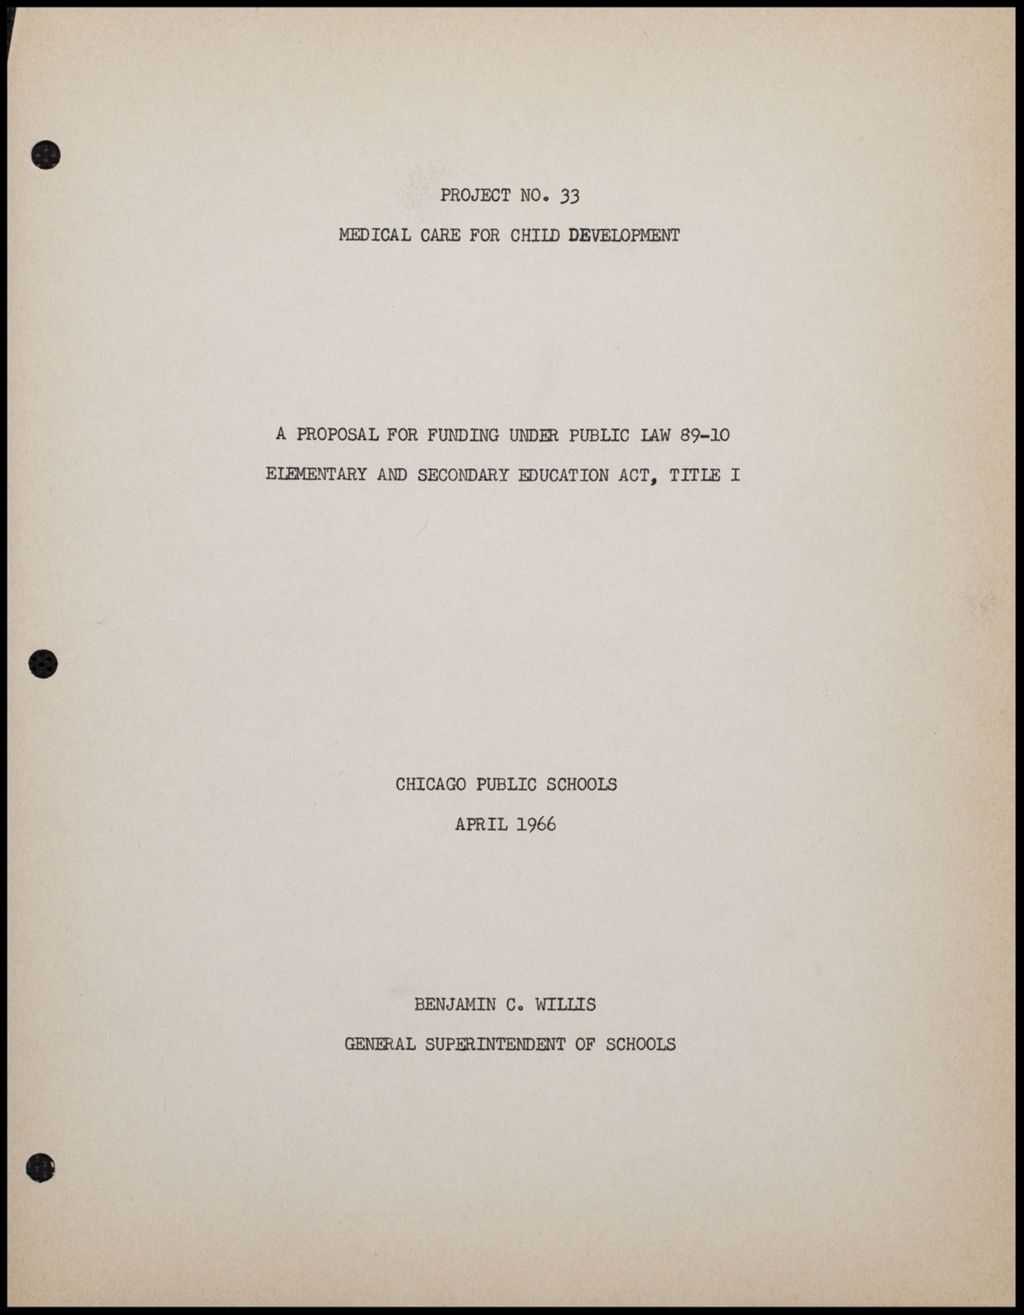 Miniature of US Commission on Civil Rights, 1966 (Folder III-183)